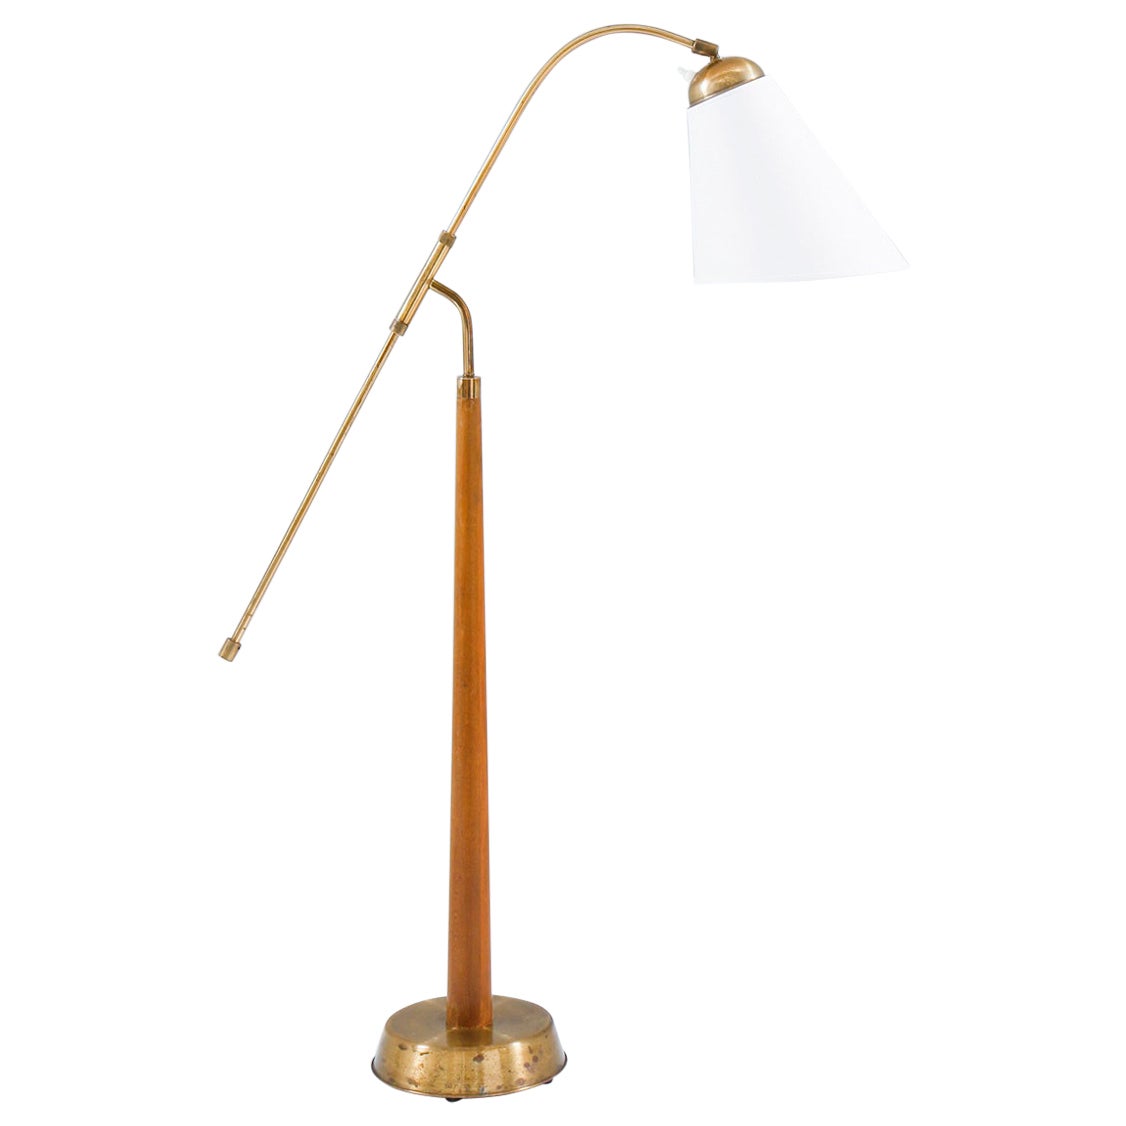 Midcentury Floor Lamp by Ystad Metall, 1940s, Sweden